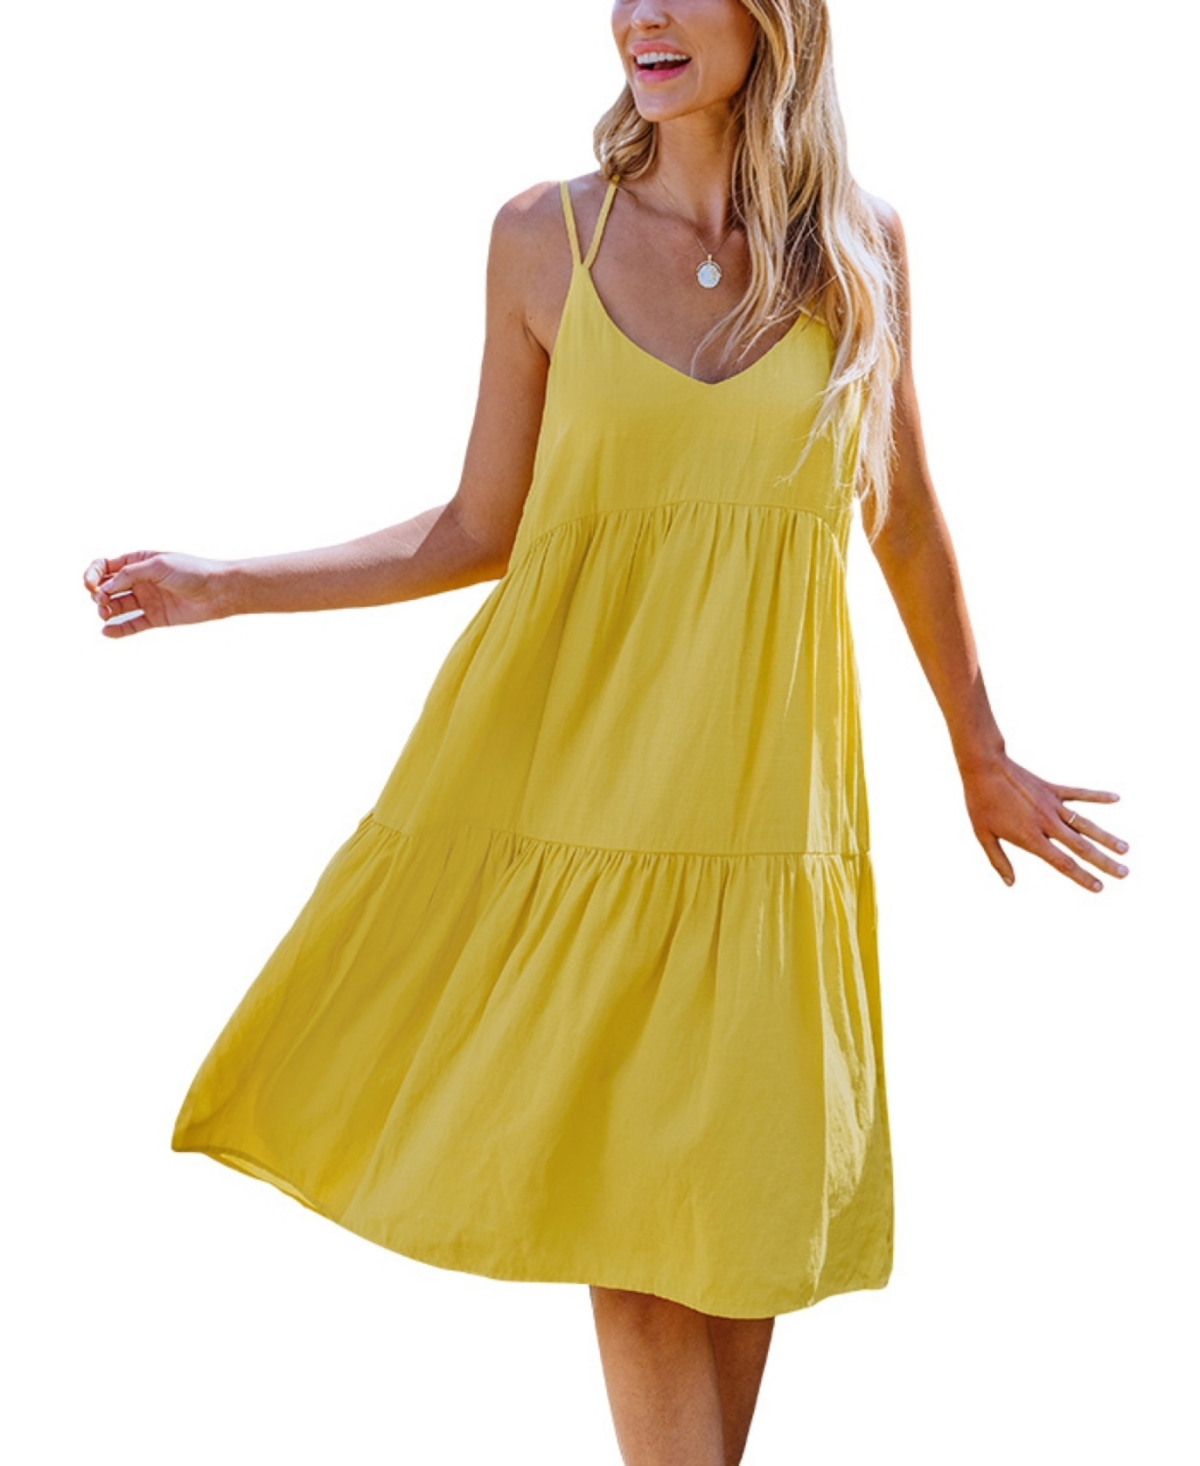 Women's Sunshine Yellow Scoop Neck Sleeveless Midi Beach Dress - Yellow